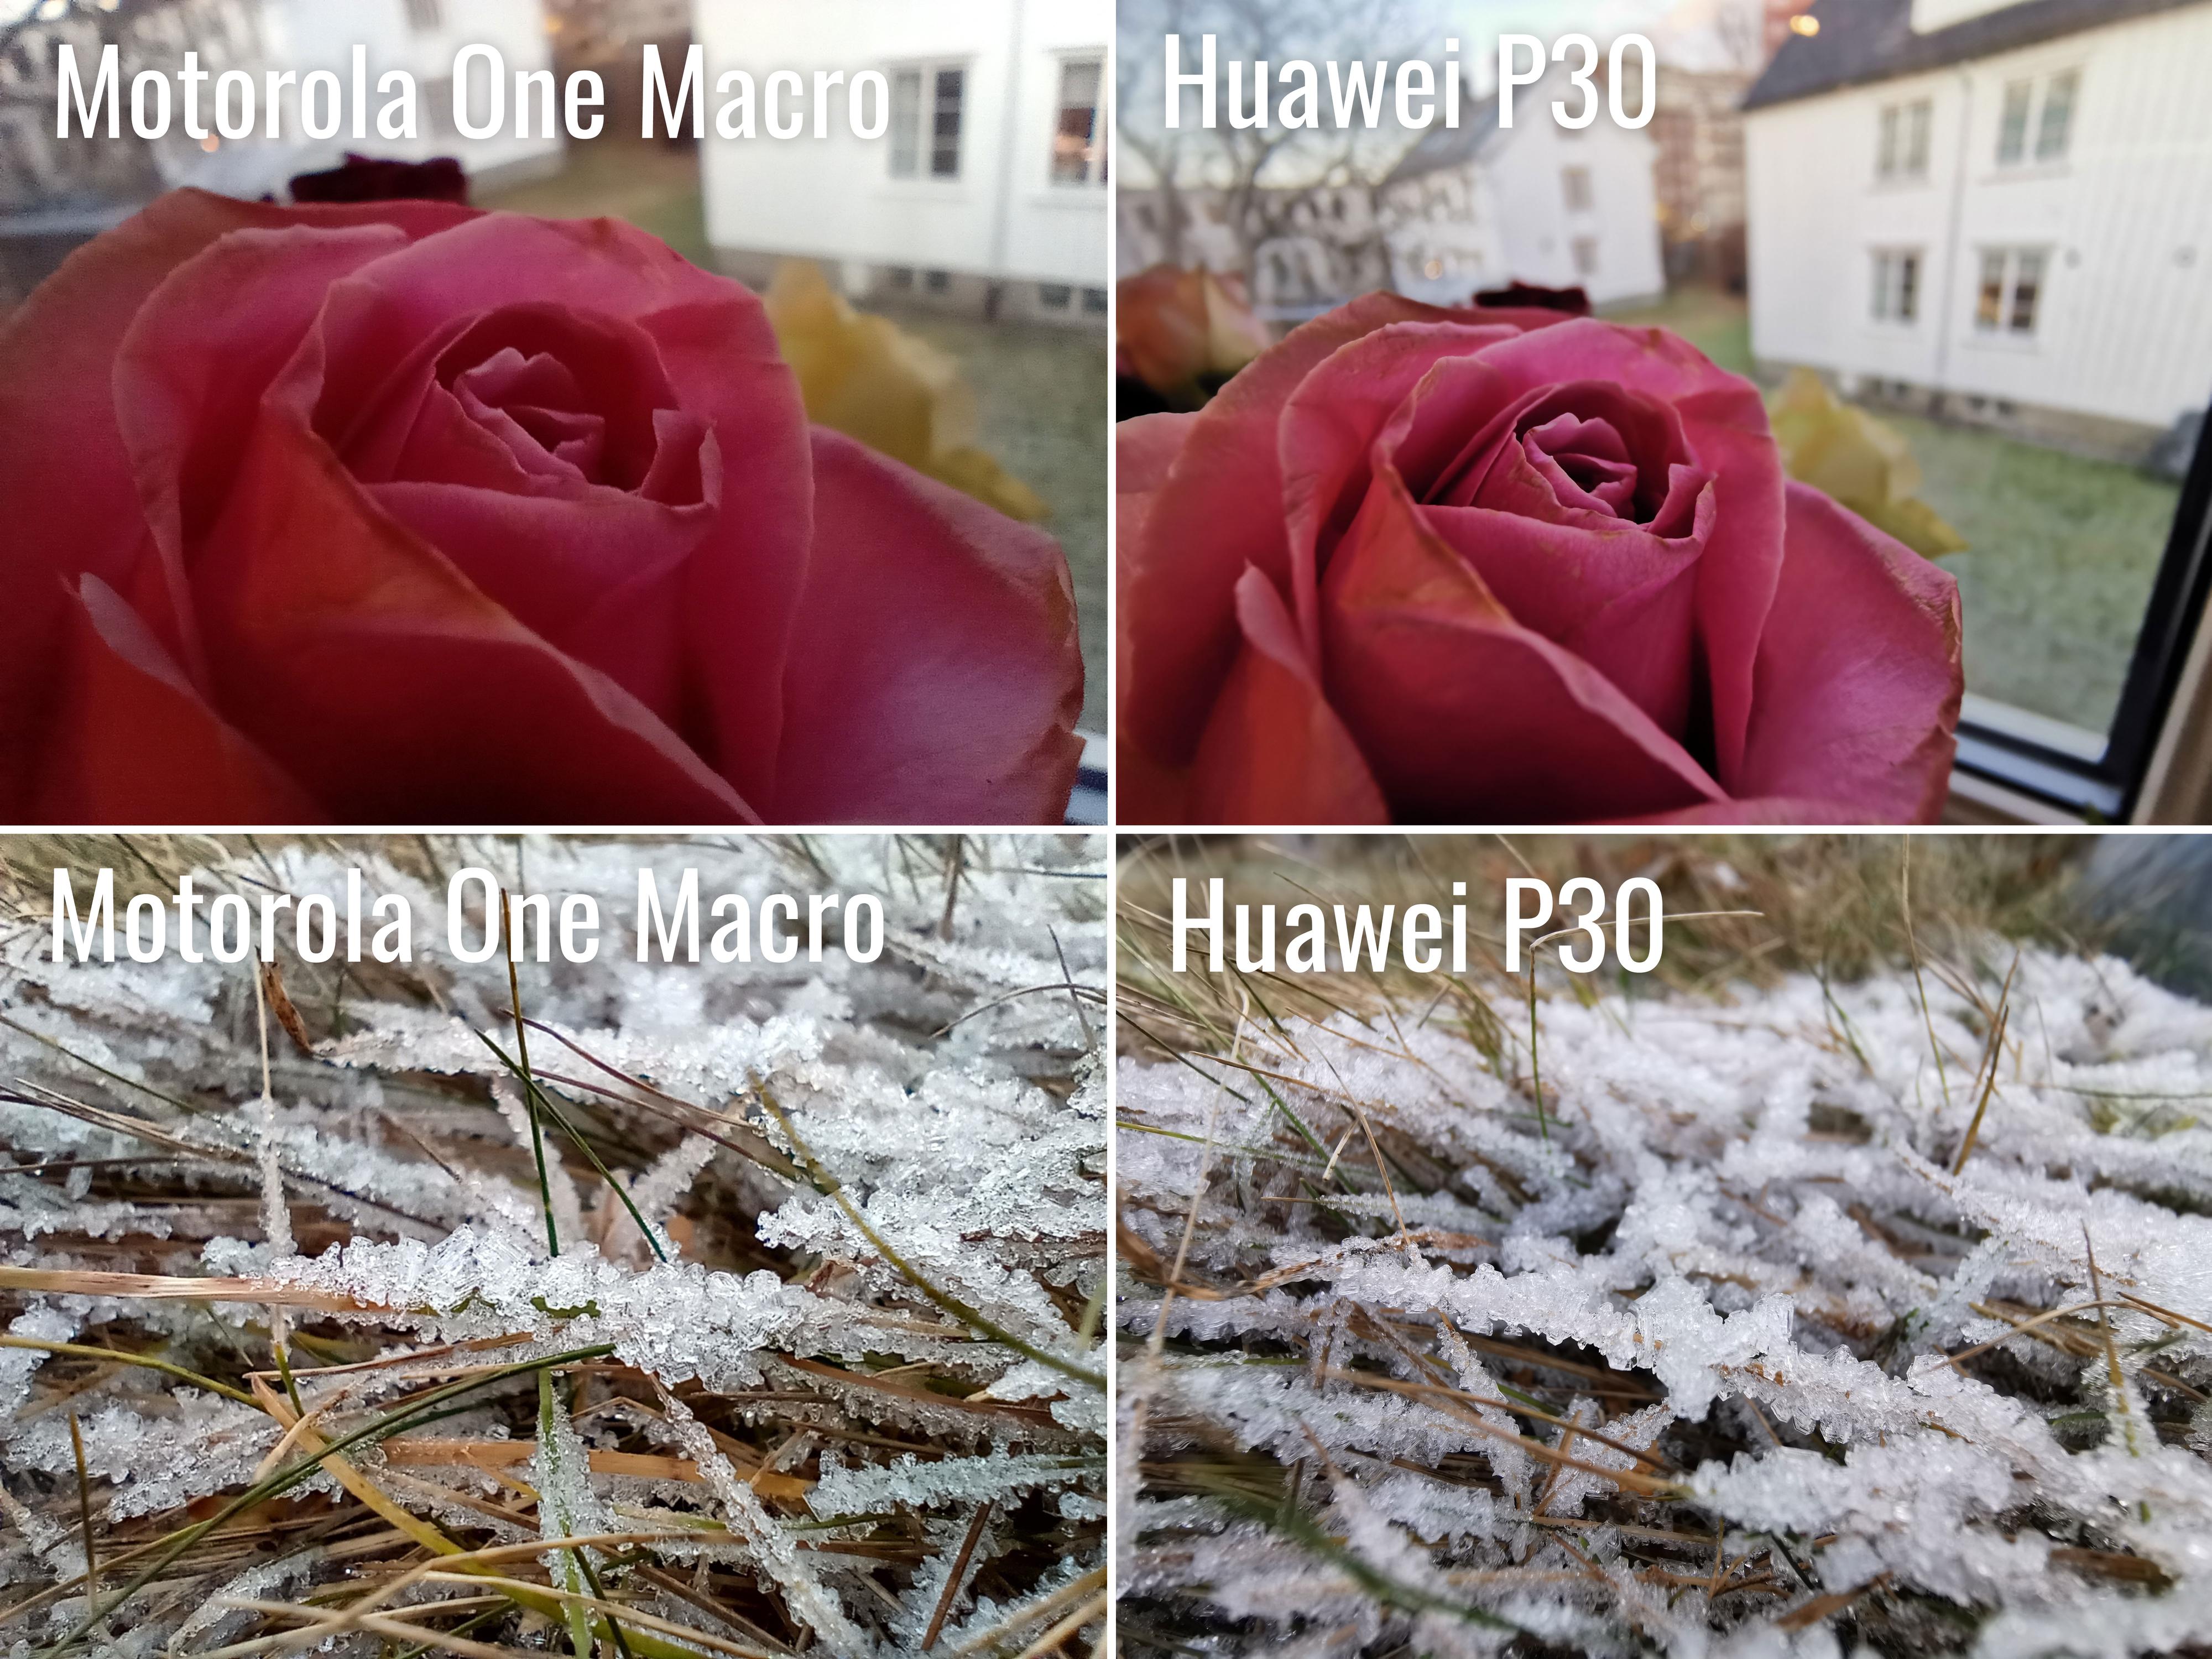 Andre telefoner, som Huawei P30, kan bruke vidvinkelkameraet sitt som makrokameraet. Og kvaliteten er naturlig nok betraktelig bedre.